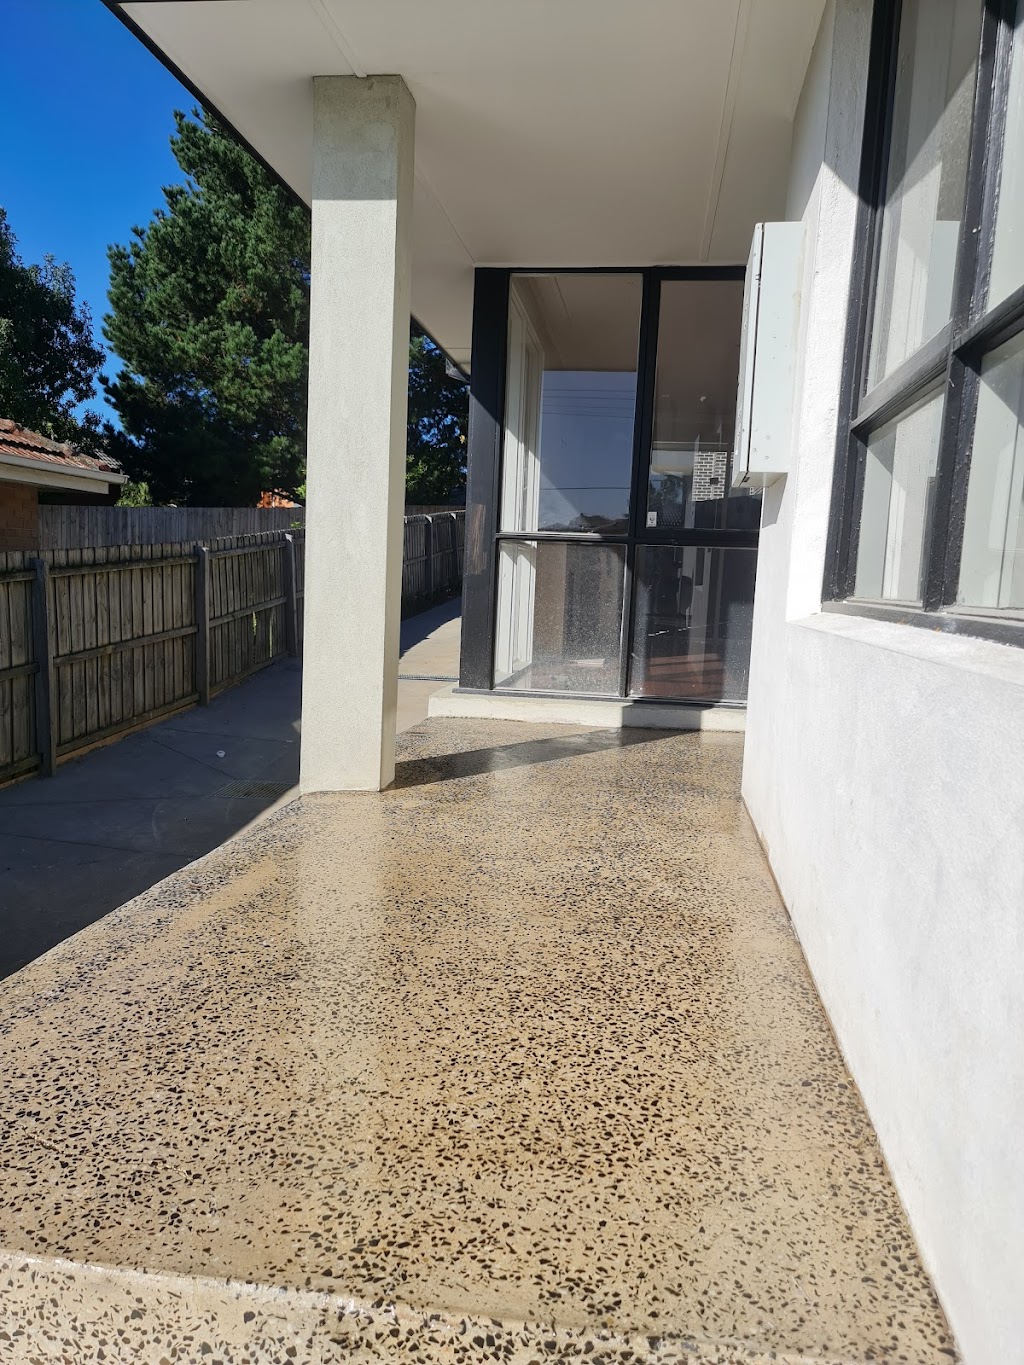 Peninsula Polished Concrete | 18 Ninth Ave, Rosebud VIC 3939, Australia | Phone: 0431 663 556